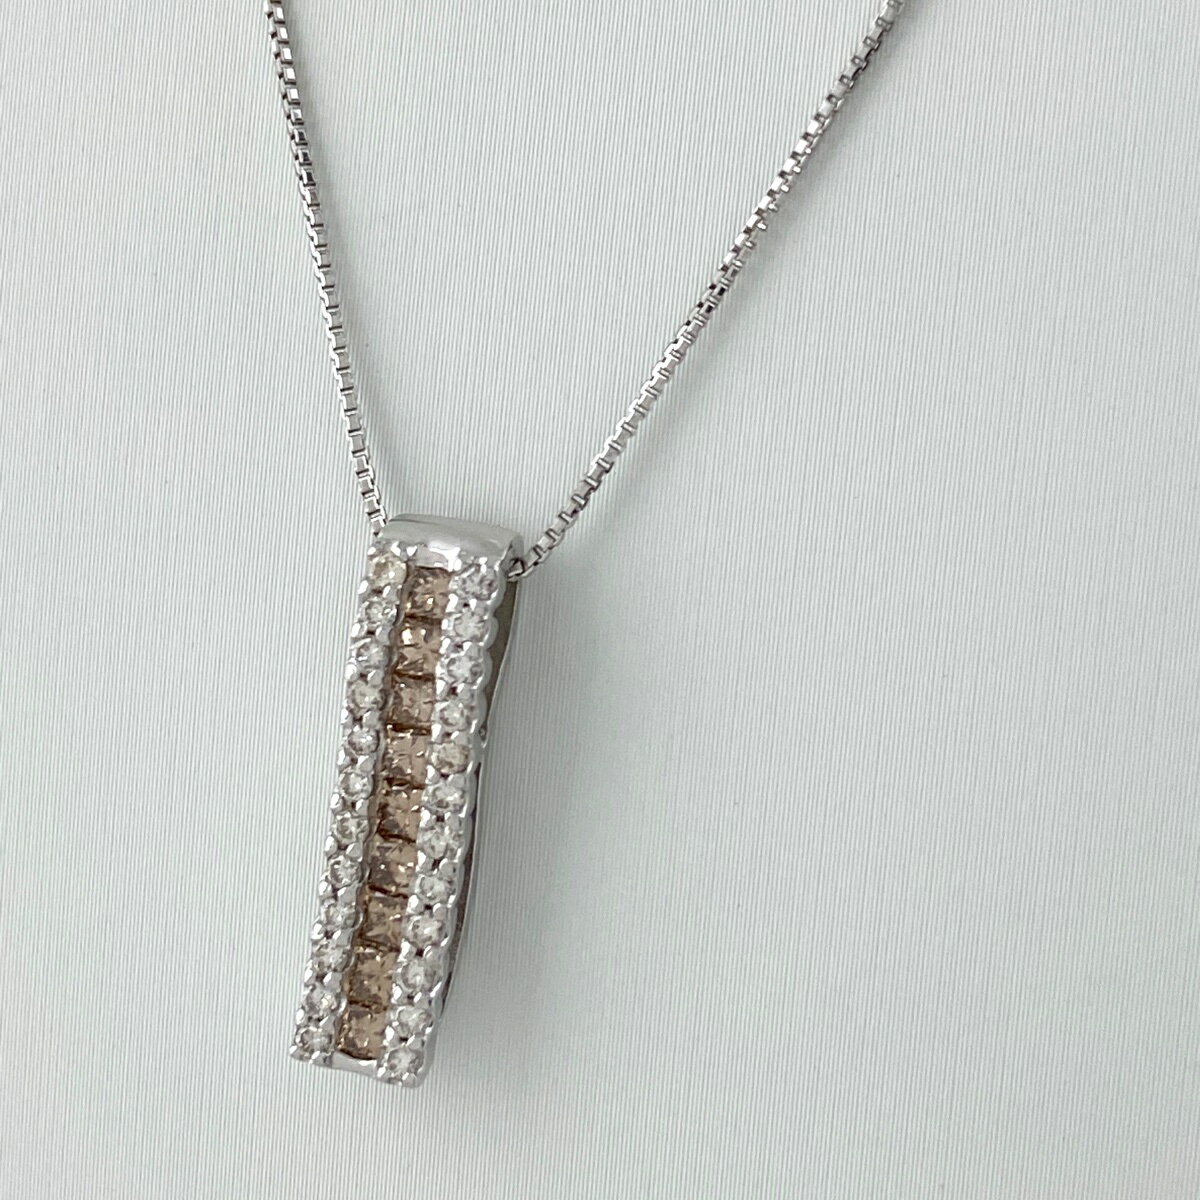  メレダイヤ デザインネックレス WG ホワイトゴールド ペンダント ネックレス K18 WG ダイヤモンド レディース 